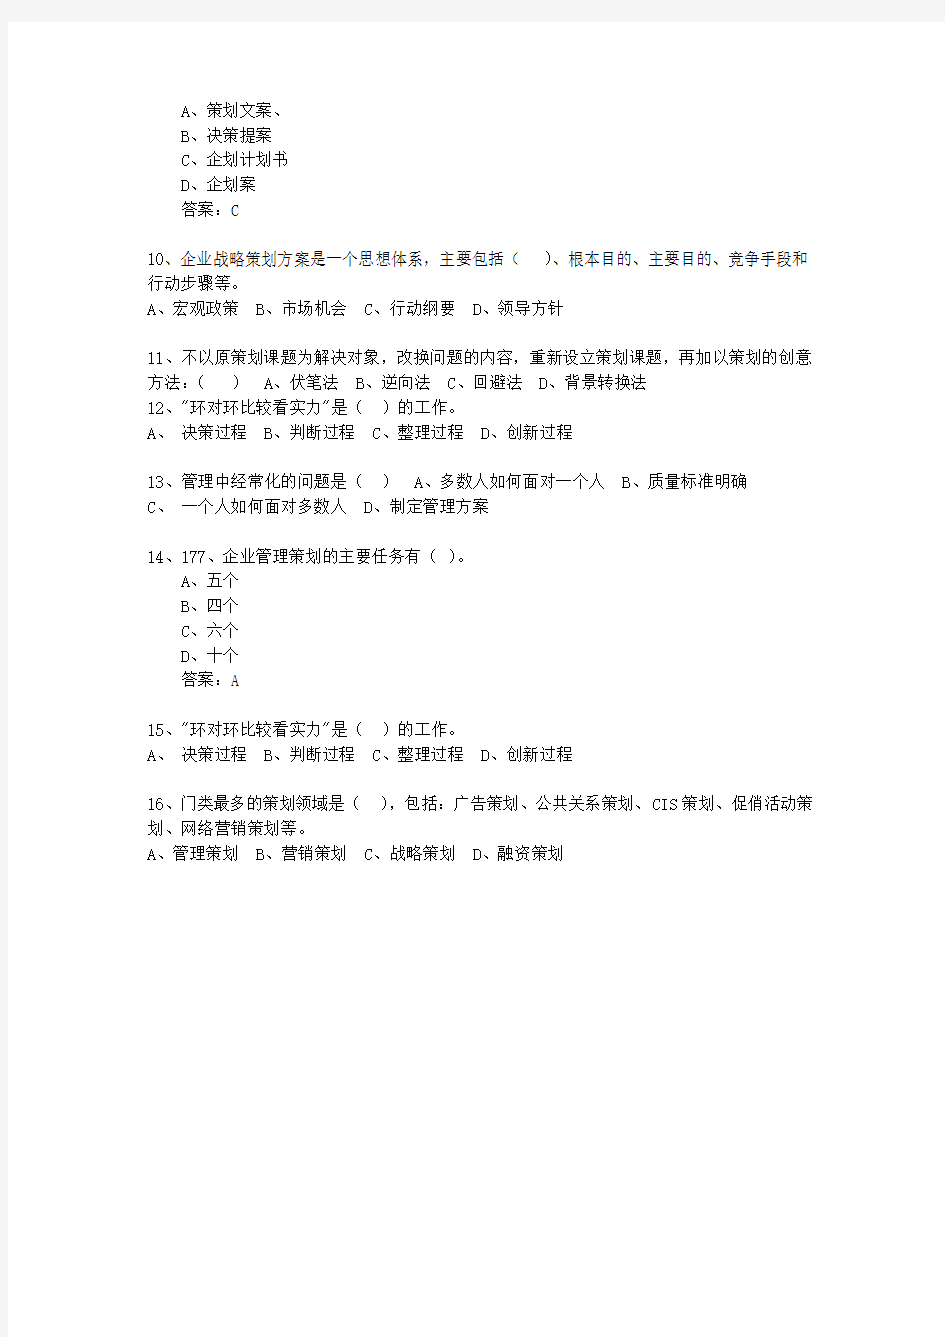 2010年台湾省市场营销策划师最新考试试题库(完整版)